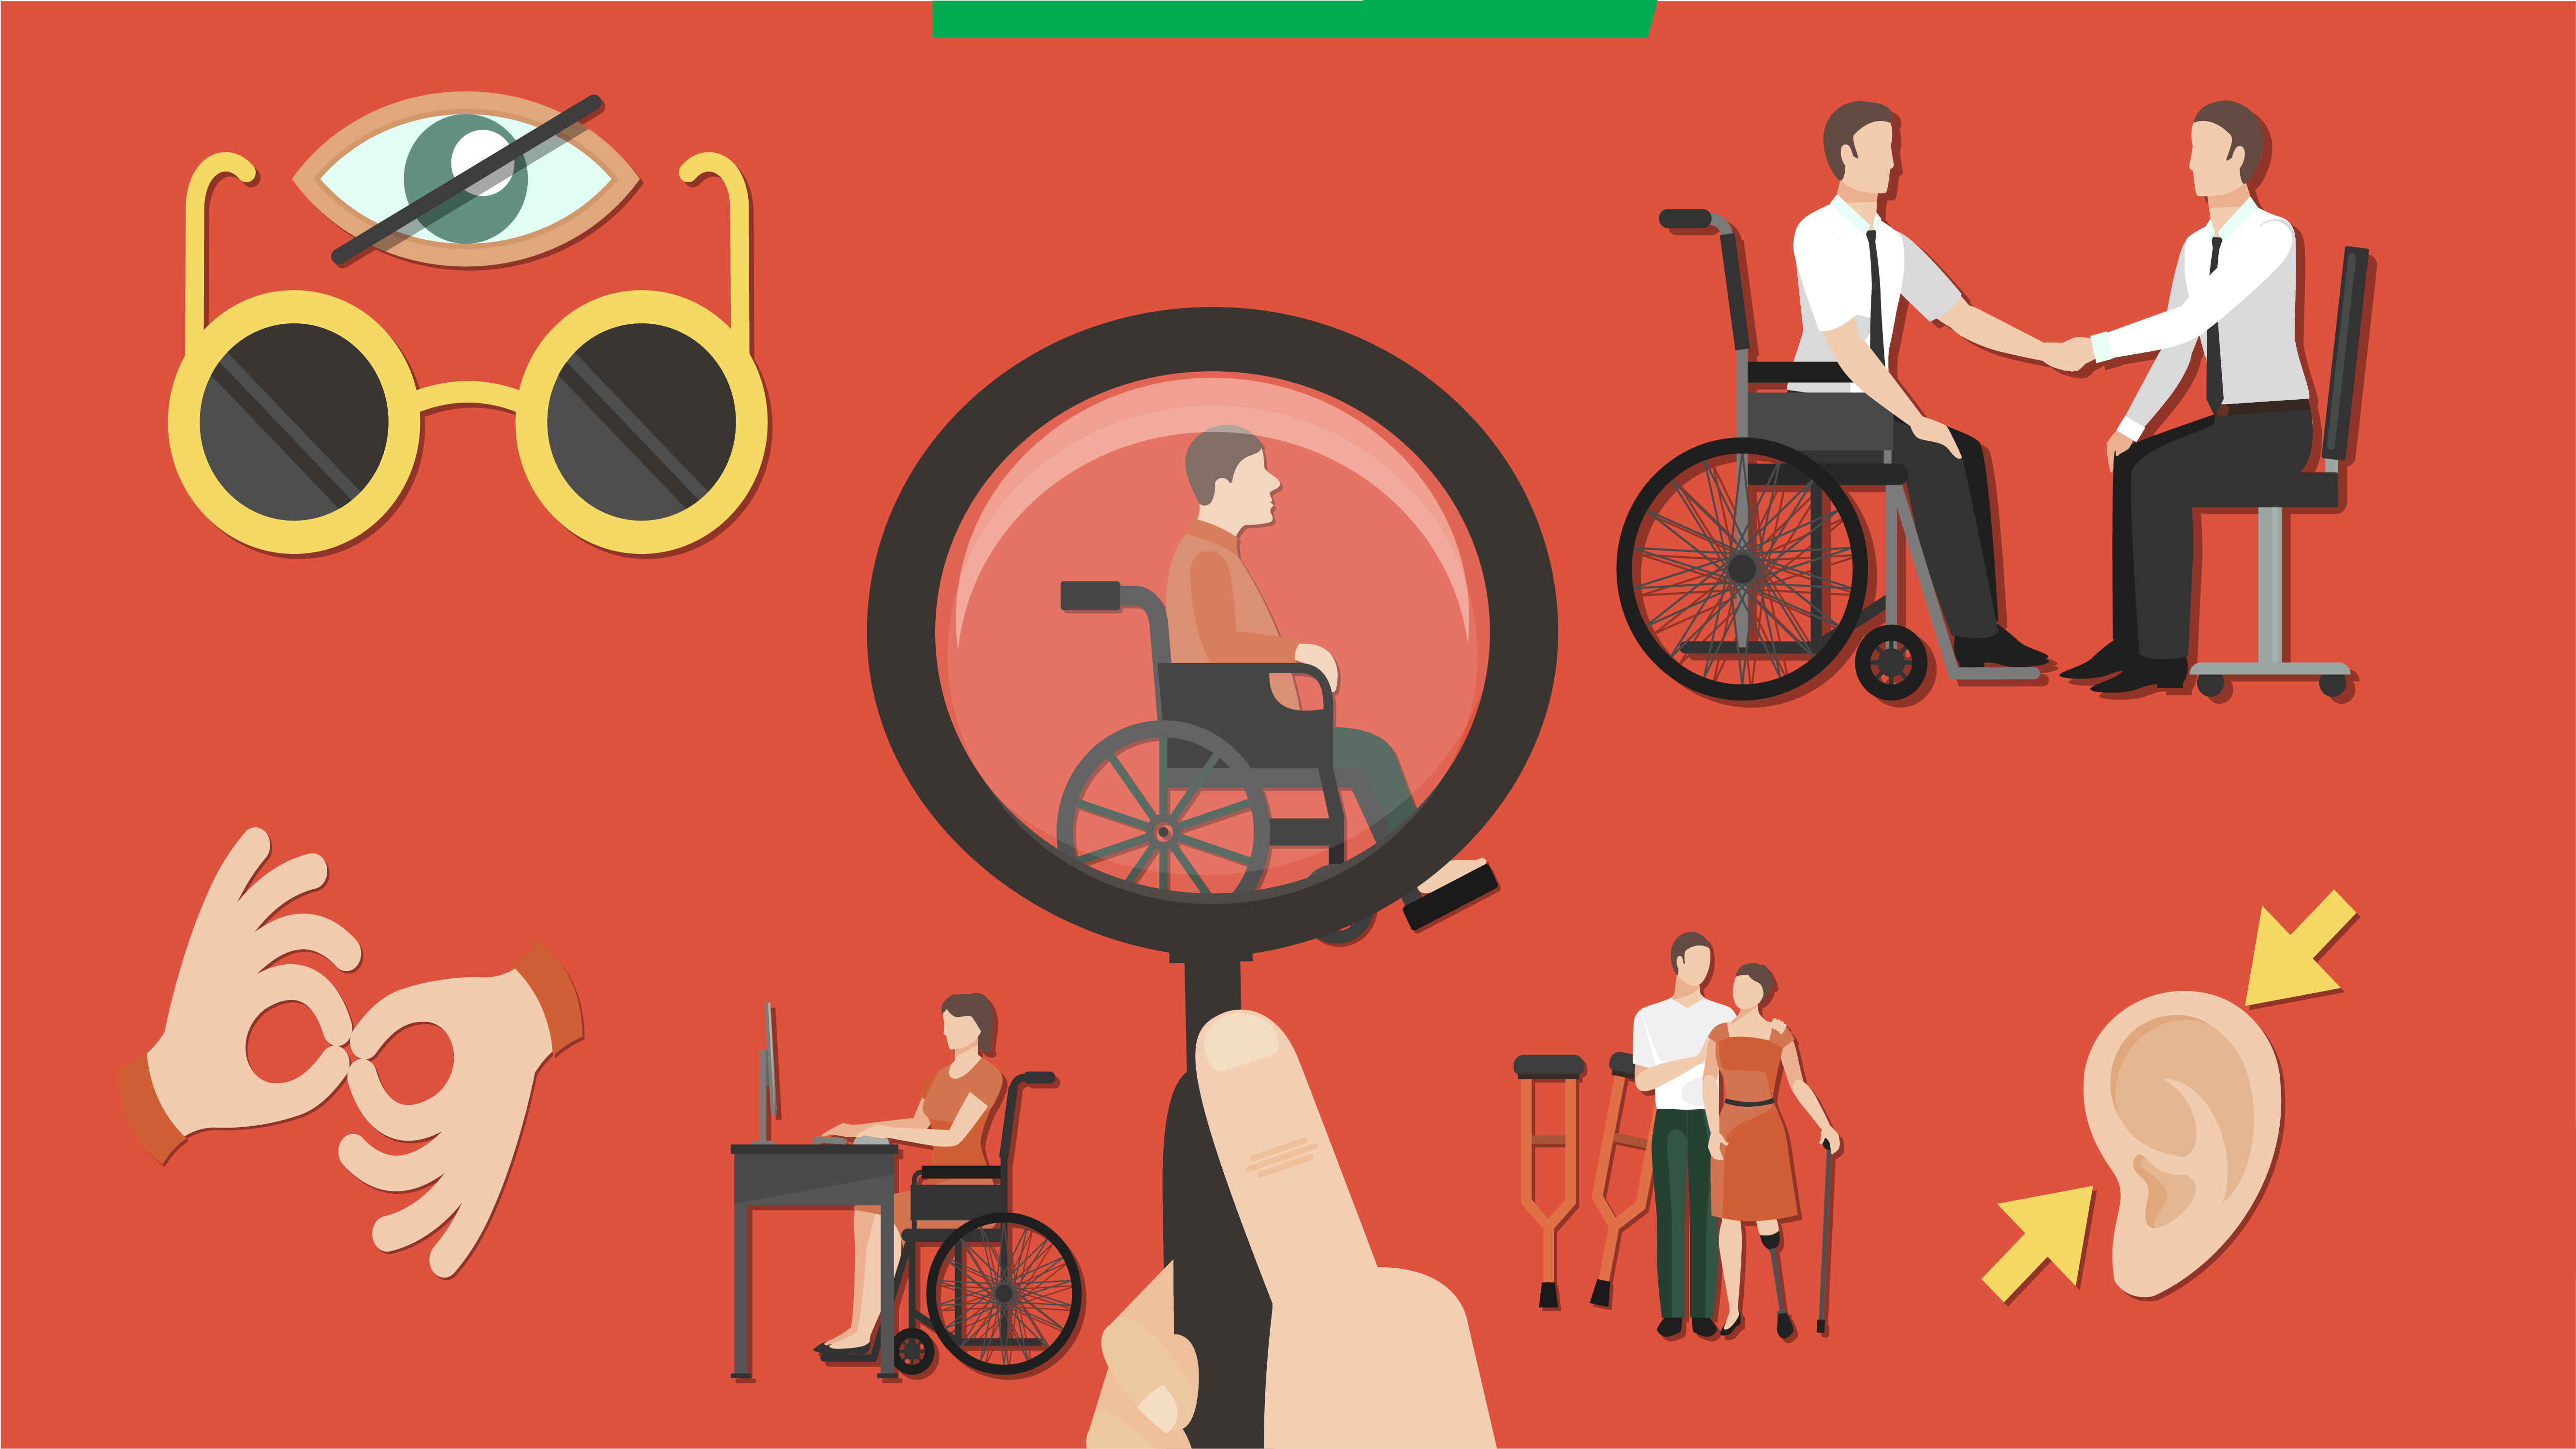 Ilustração de fundo vermelho exibe pessoas com deficiências físicas e exibe desenhos de olho, orelha e mãos gesticulando, representando deficiências sensoriais. Uma lupa aponta para o centro da imagem.